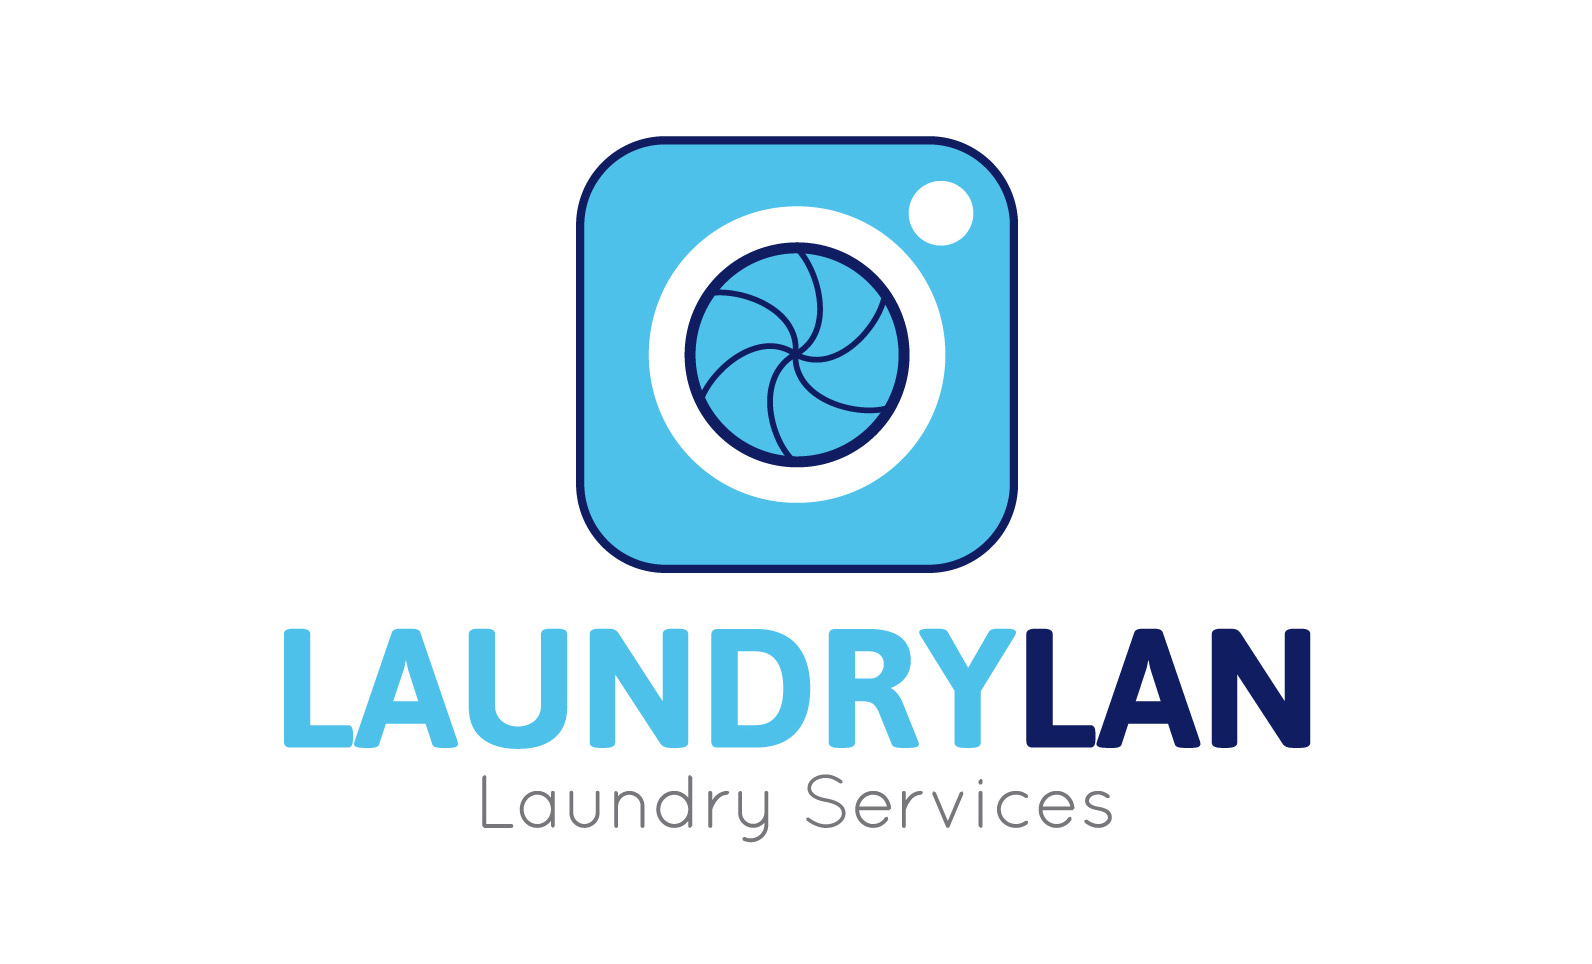 Marketplace de lavandería - Laundrylan